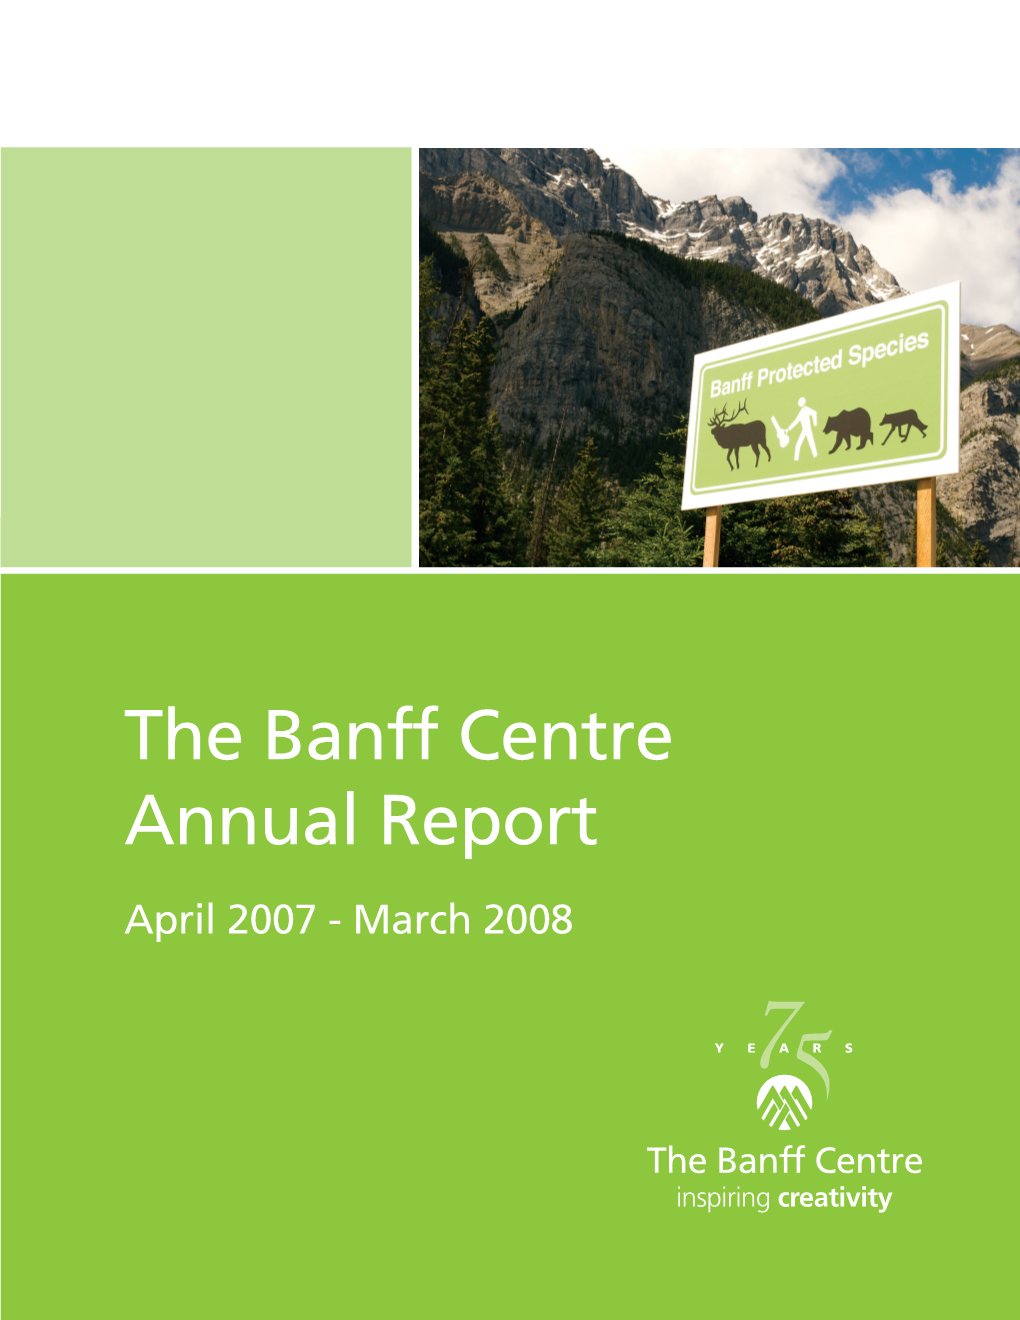 The Banff Centre Annual Report